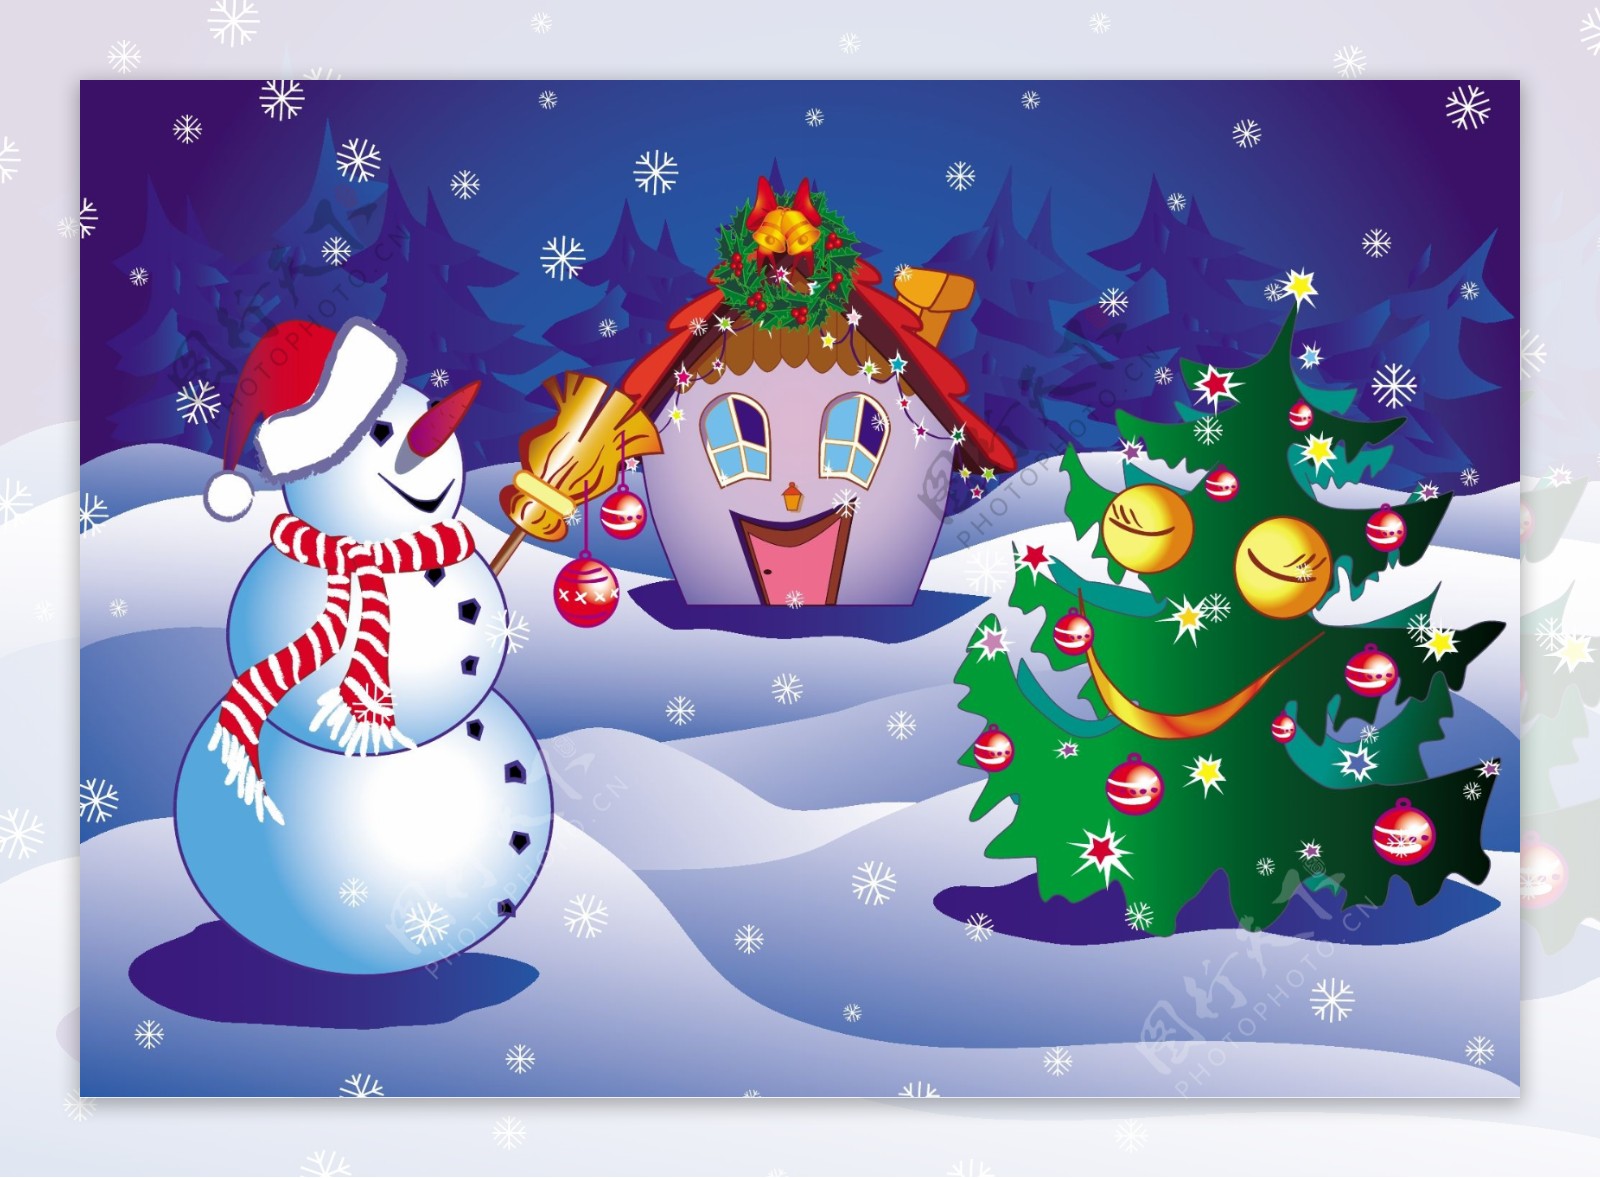 多款圣诞节童话雪人背景矢量素材